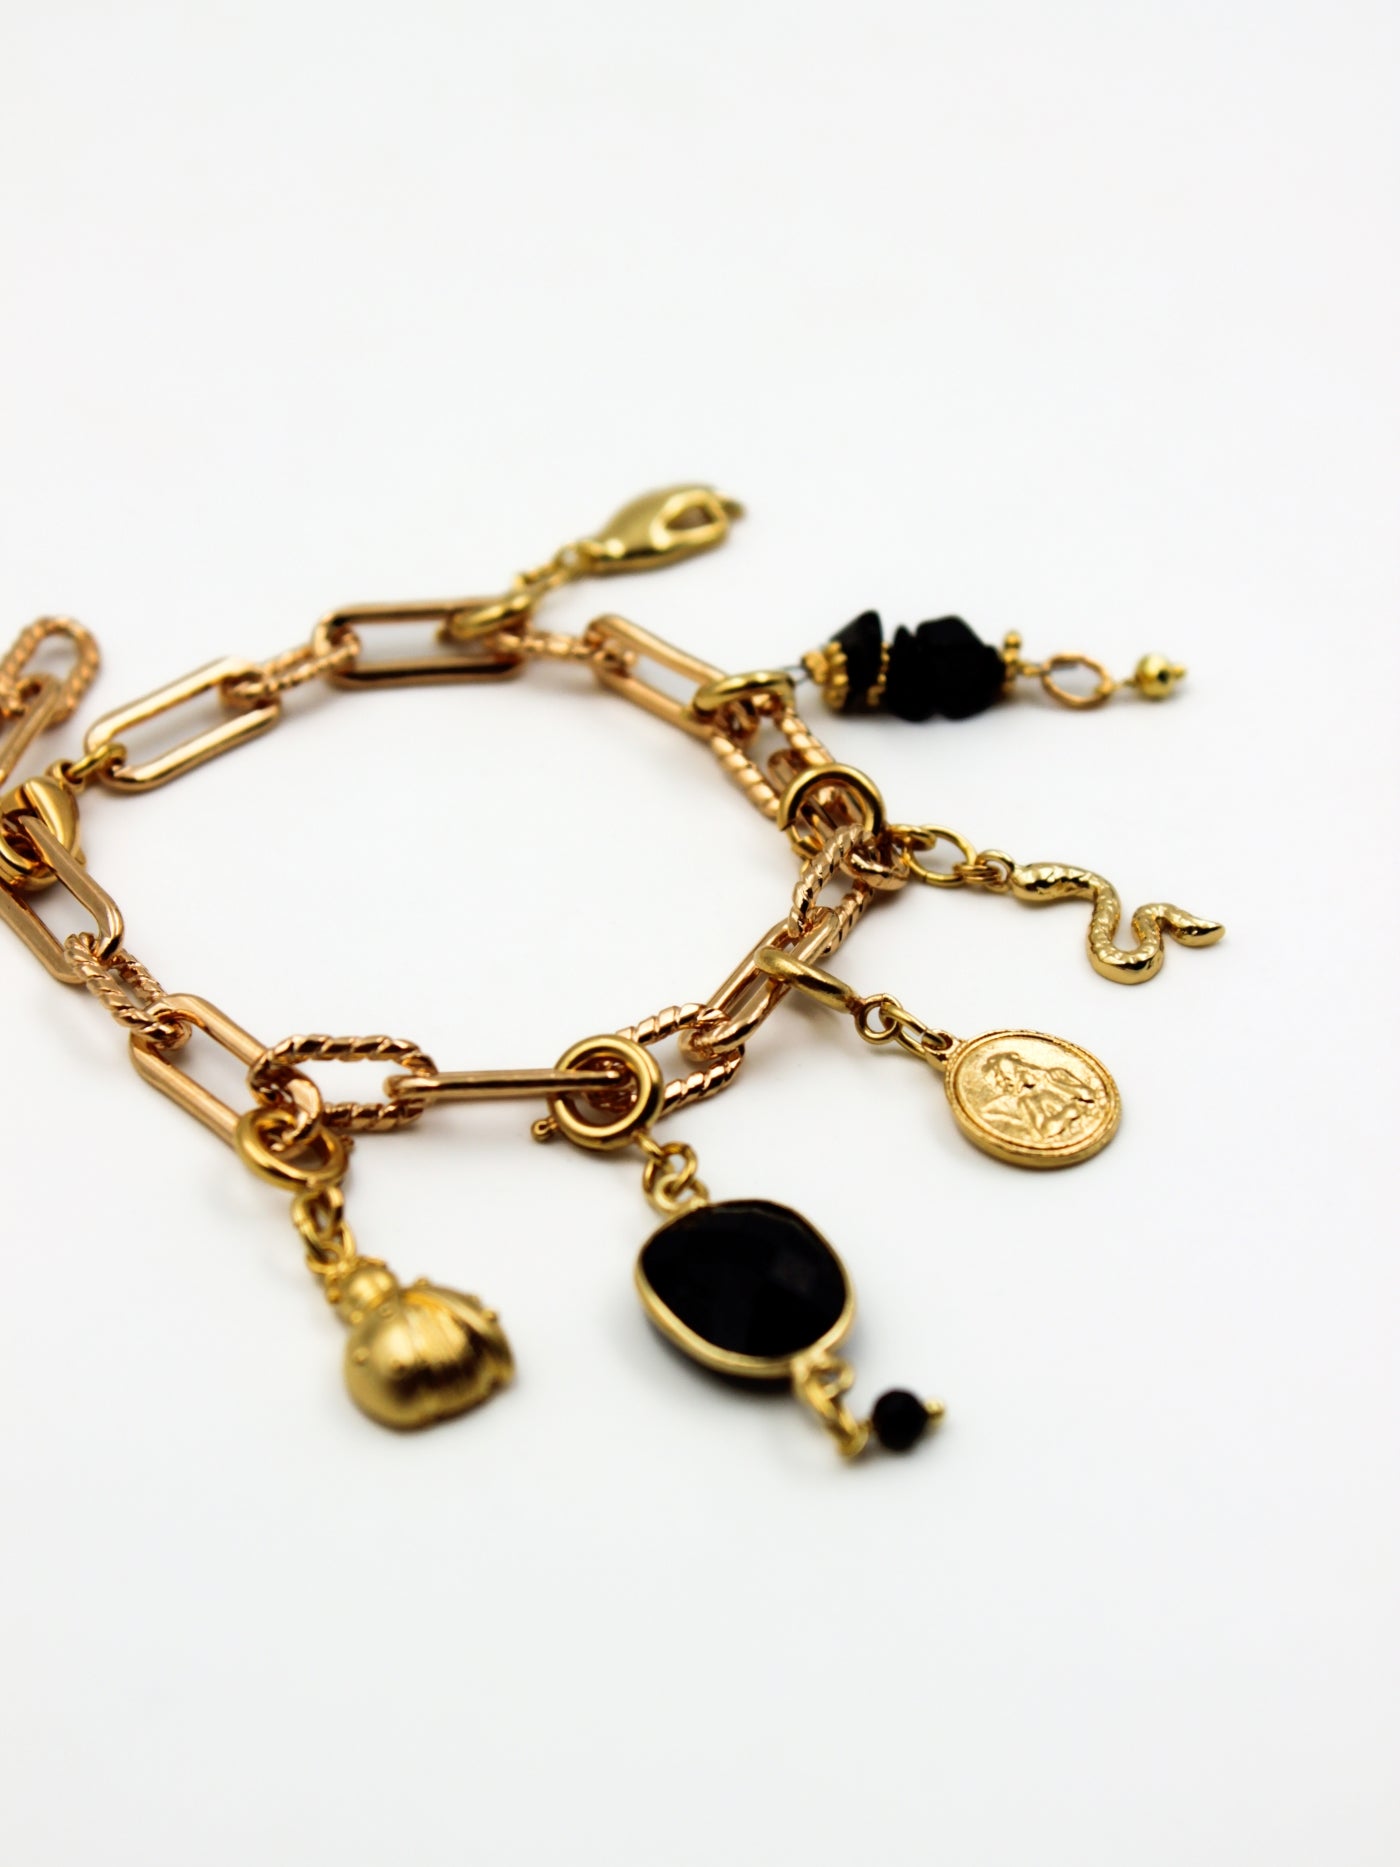 Composition charms sur bracelet en mailles torsadés de la gamme GRIGRI - L'Atelier des dames